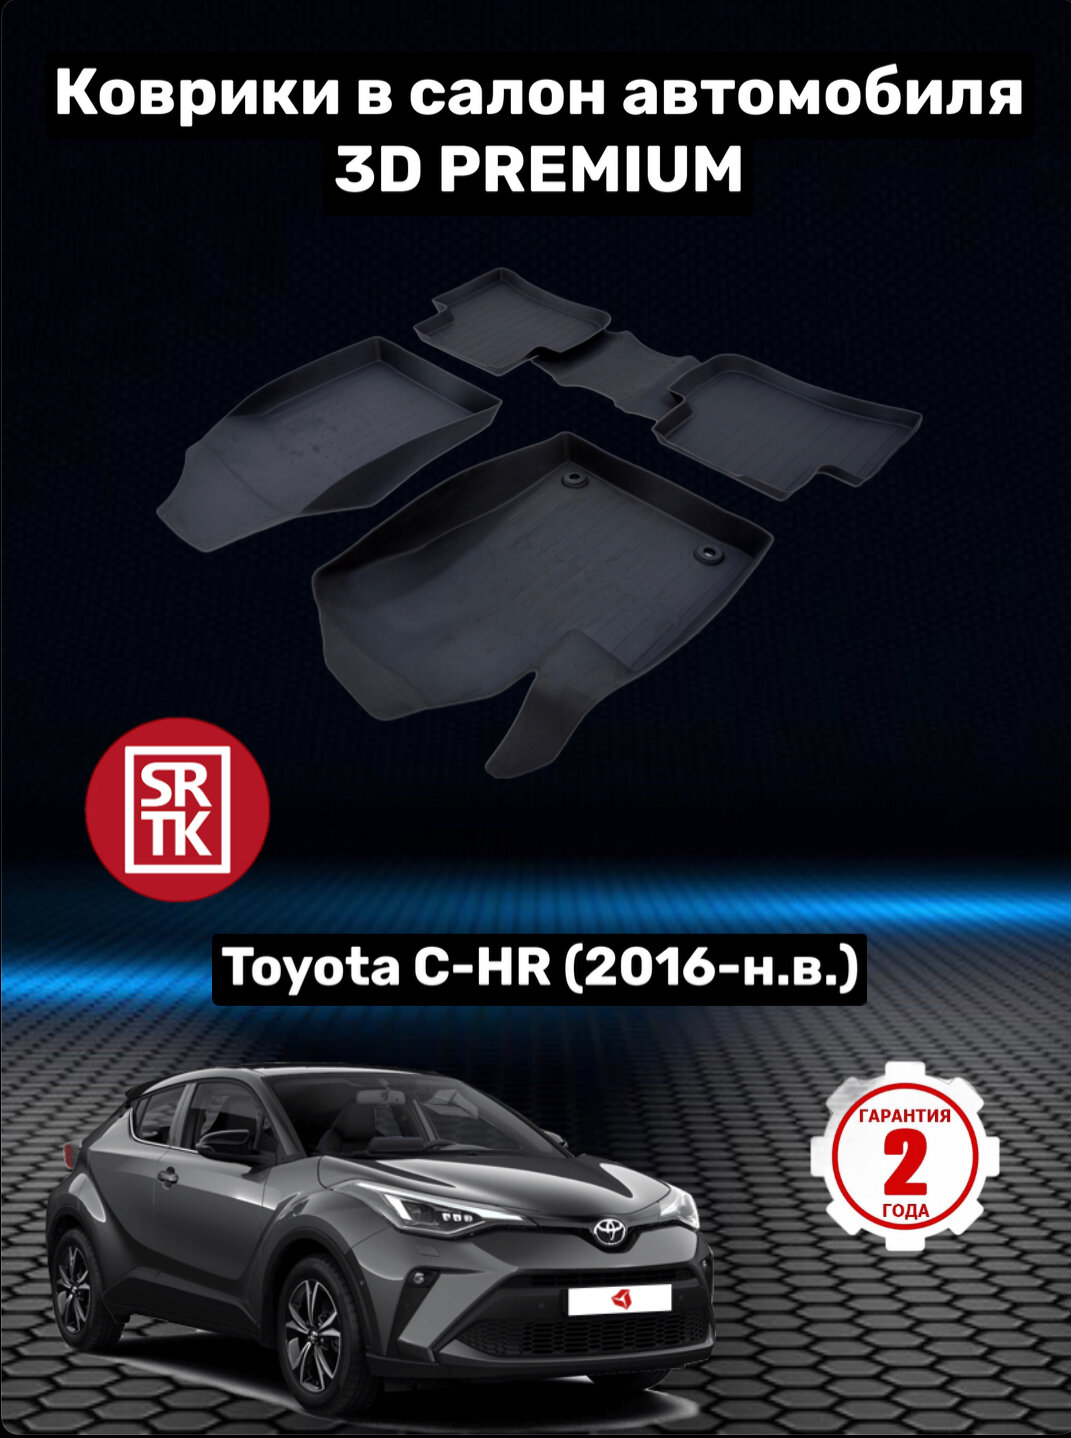 Коврики резиновые в салон для Тойота С-НR/Toyota C-HR (2016-) 3D PREMIUM SRTK (Саранск) комплект в салон